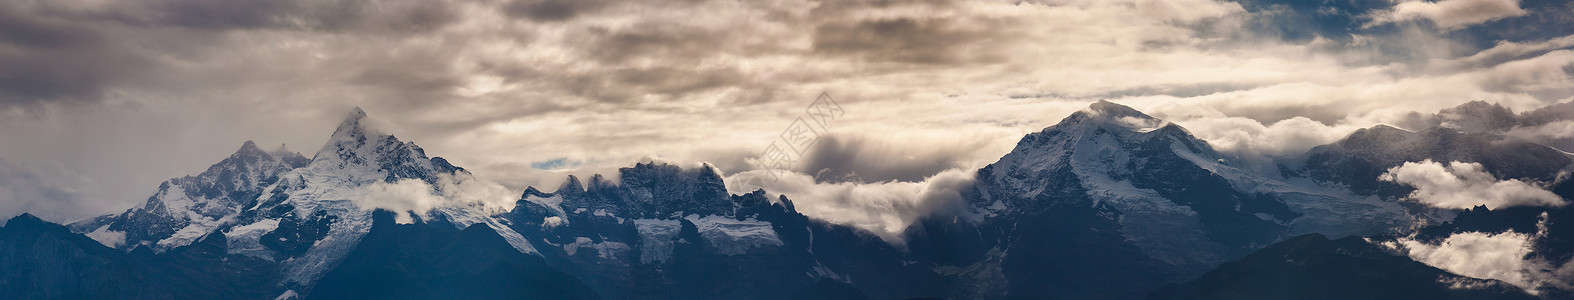 梅里雪山三峰背景图片